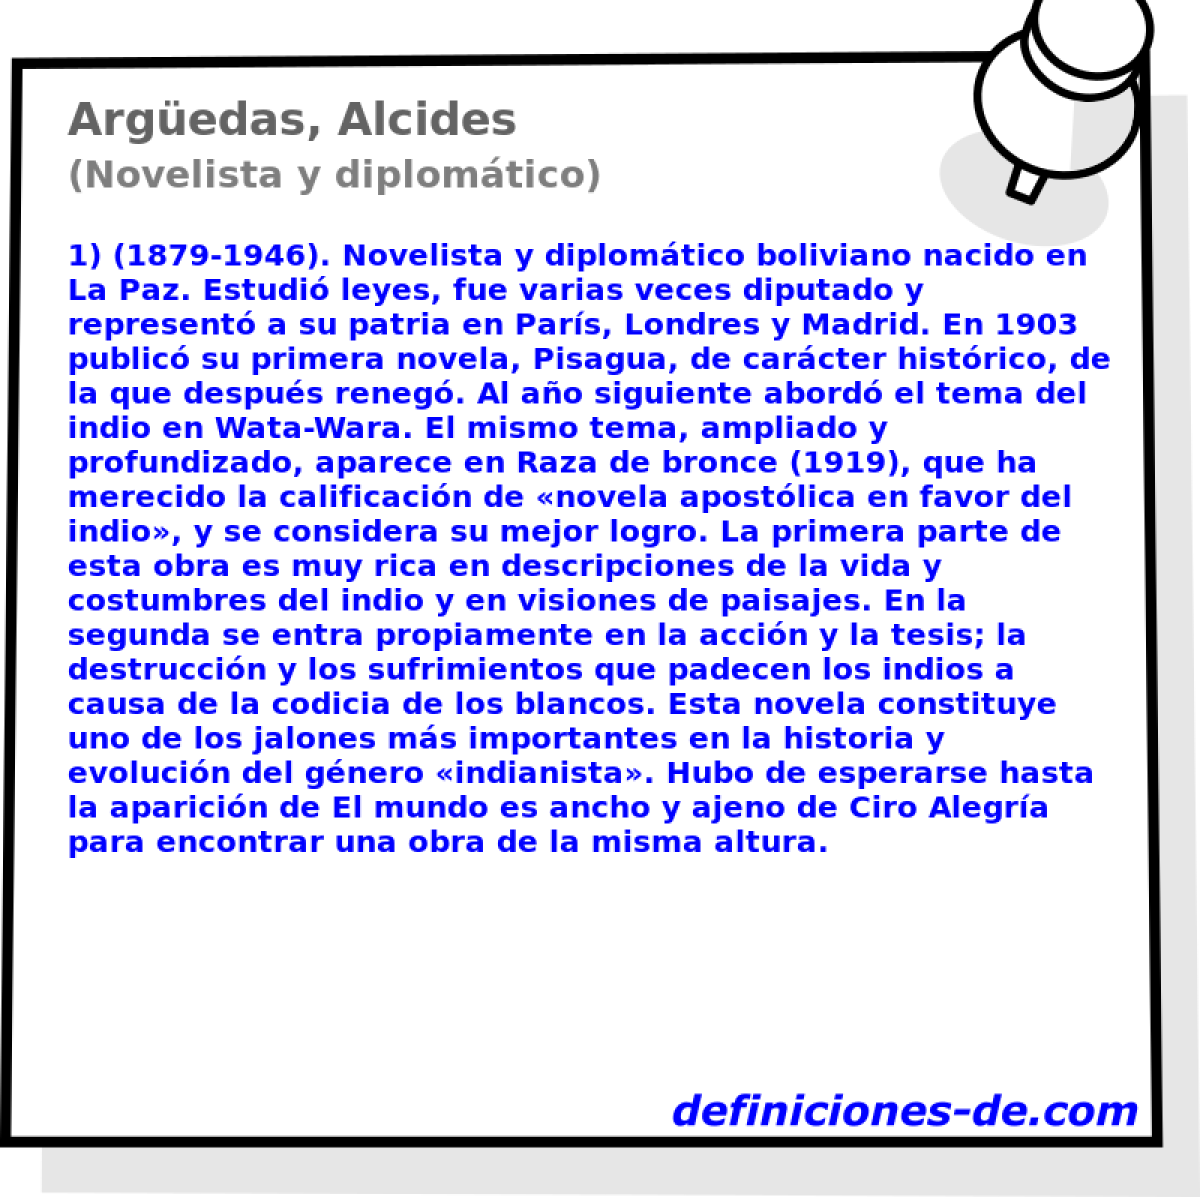 Argedas, Alcides (Novelista y diplomtico)